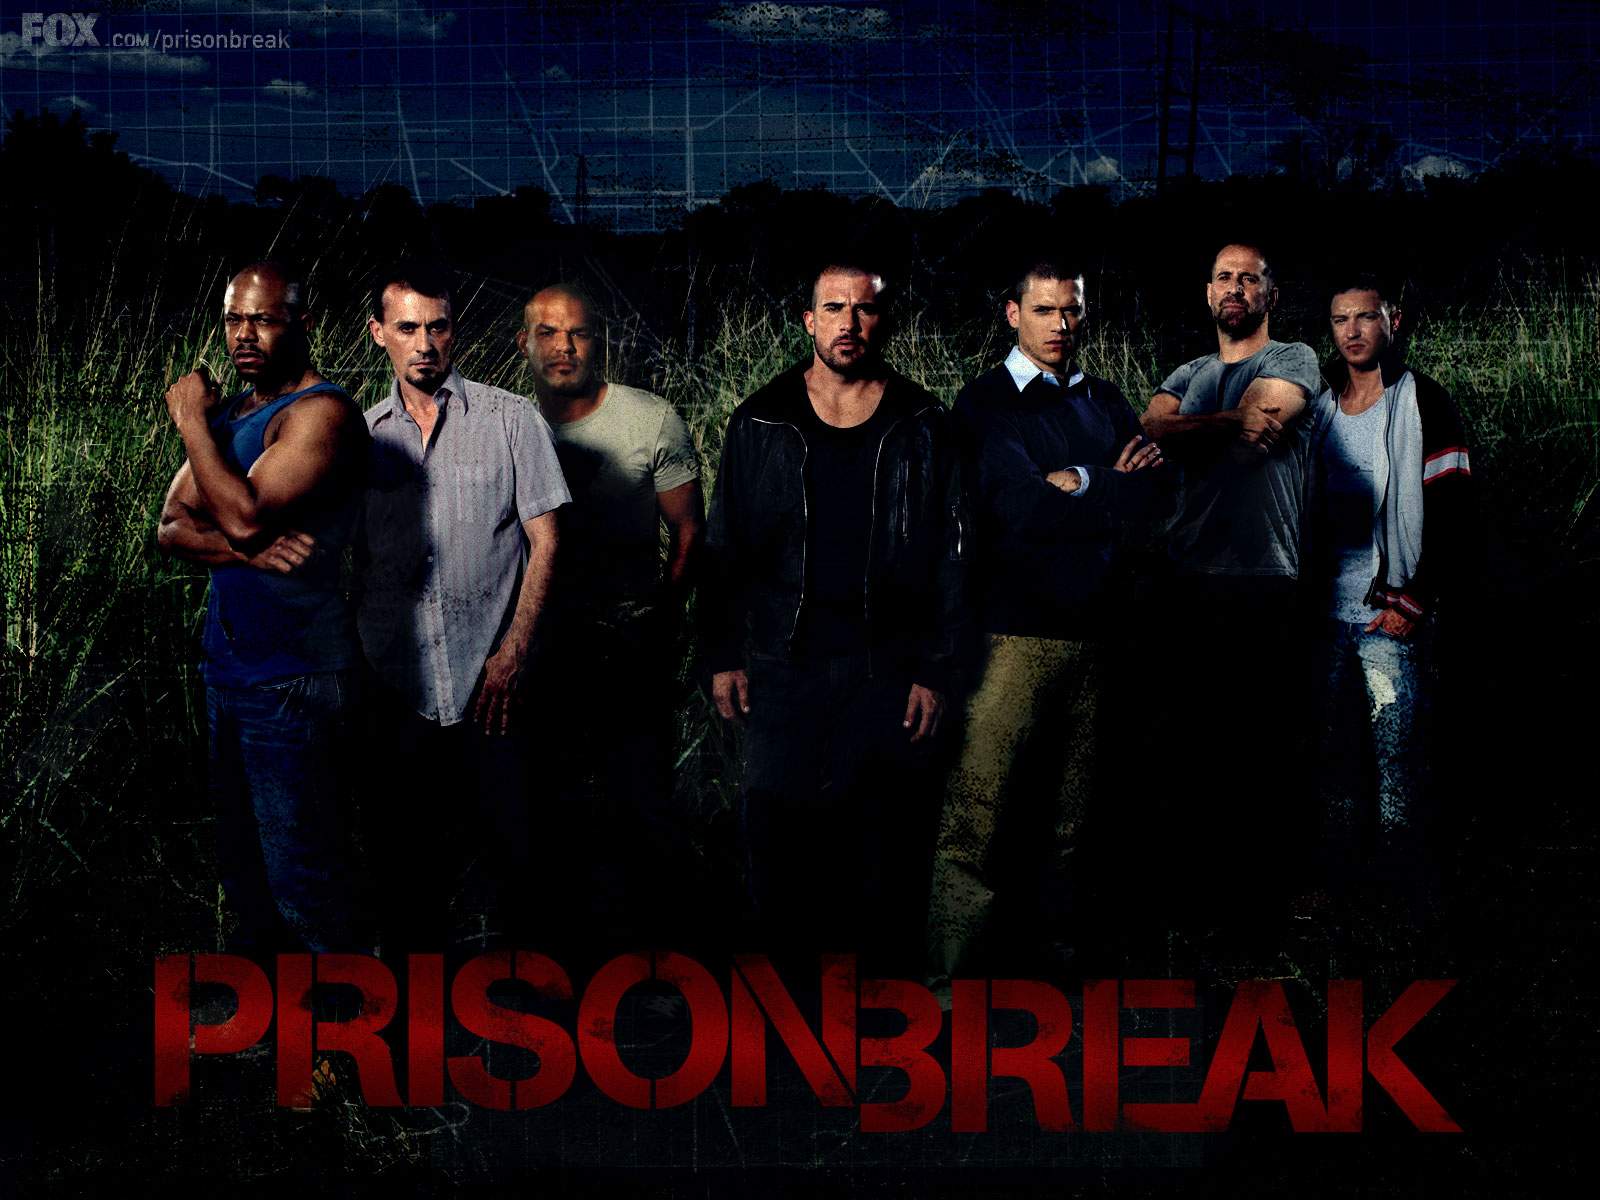 Prison Break Wallpaper